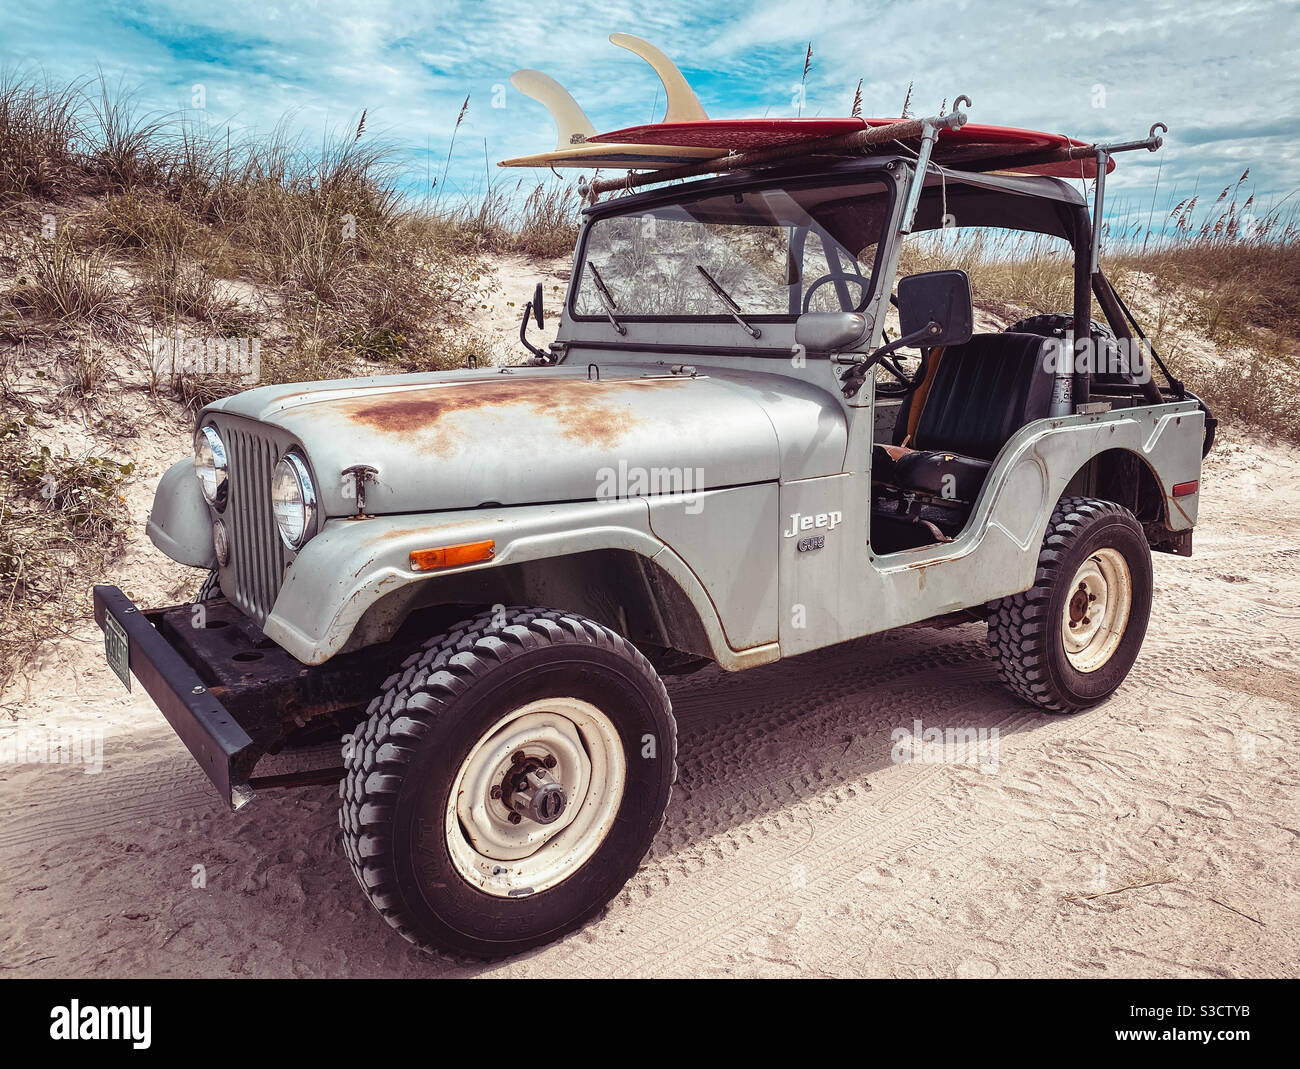 Introducir 89+ imagen jeep wrangler antiguo